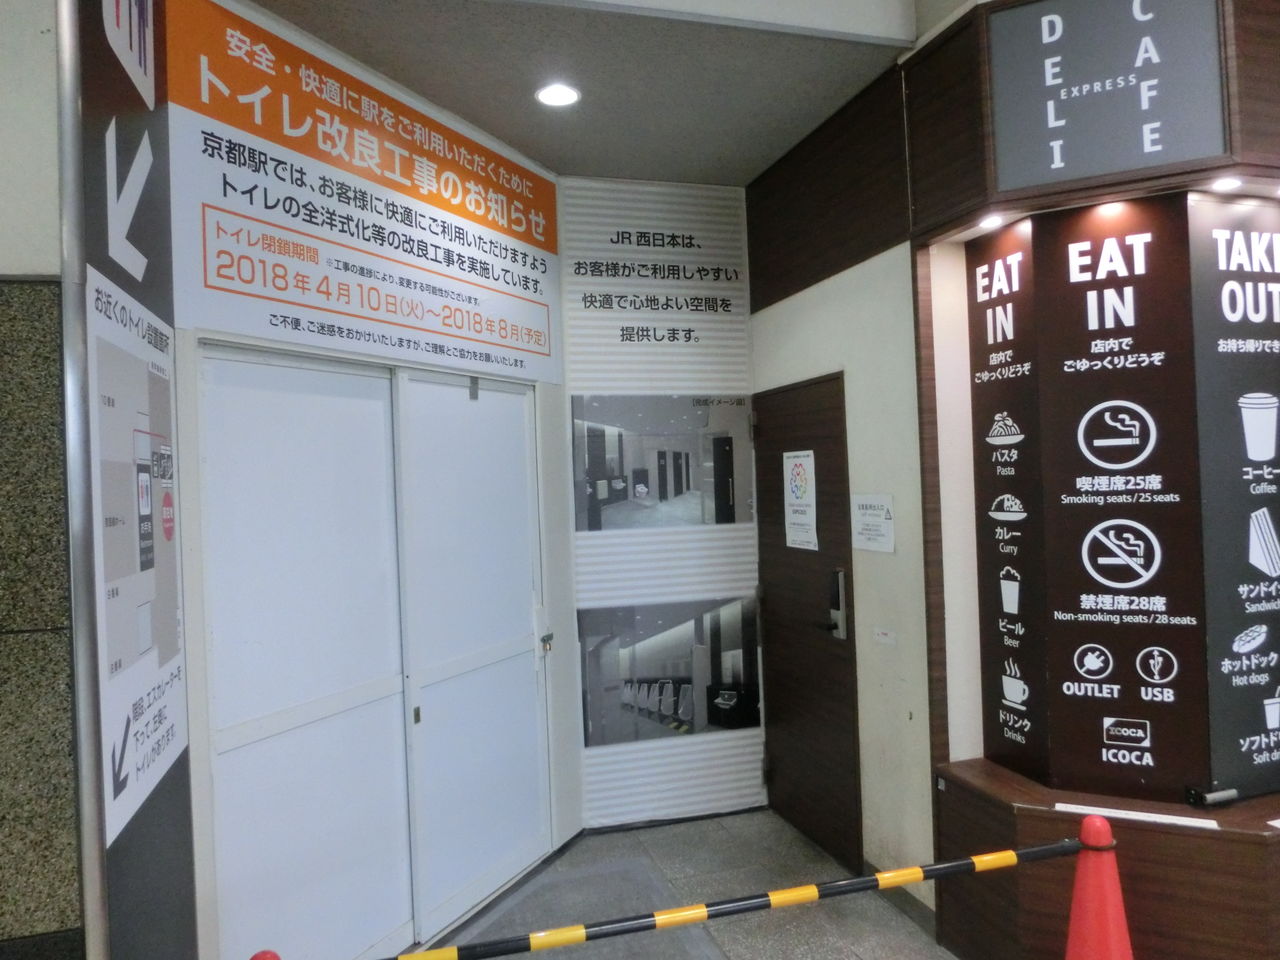 京都駅 在来線トイレの改良工事を実施中！2018年8月に使用開始か？ 関西のJRへようこそ！